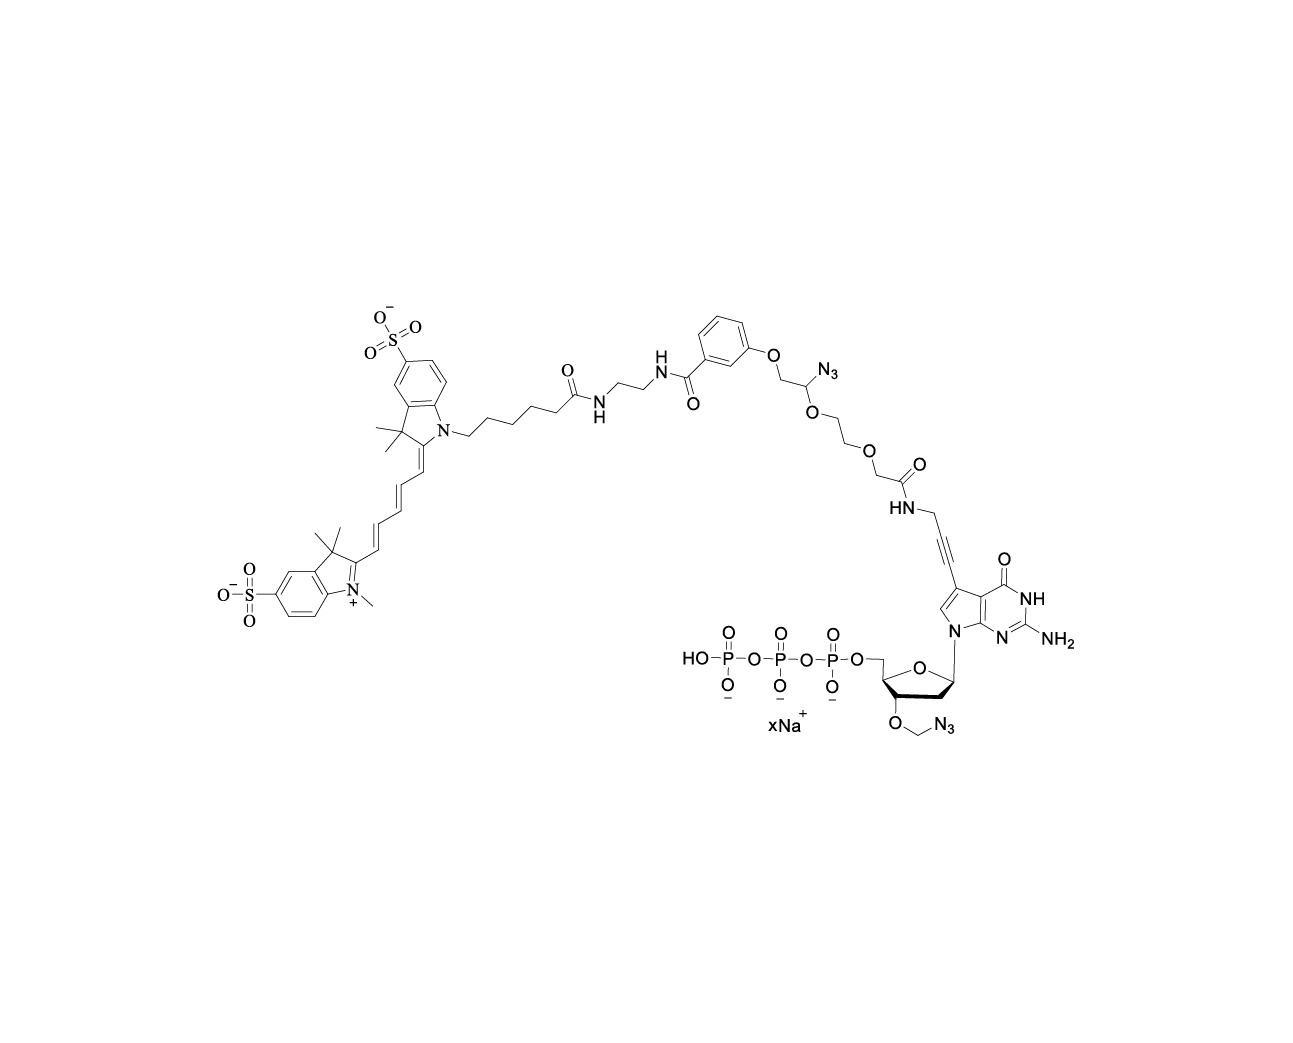 Cy5-linker-PA-3'-O-azidomethyl-dGTP 100mM Sodium Solution